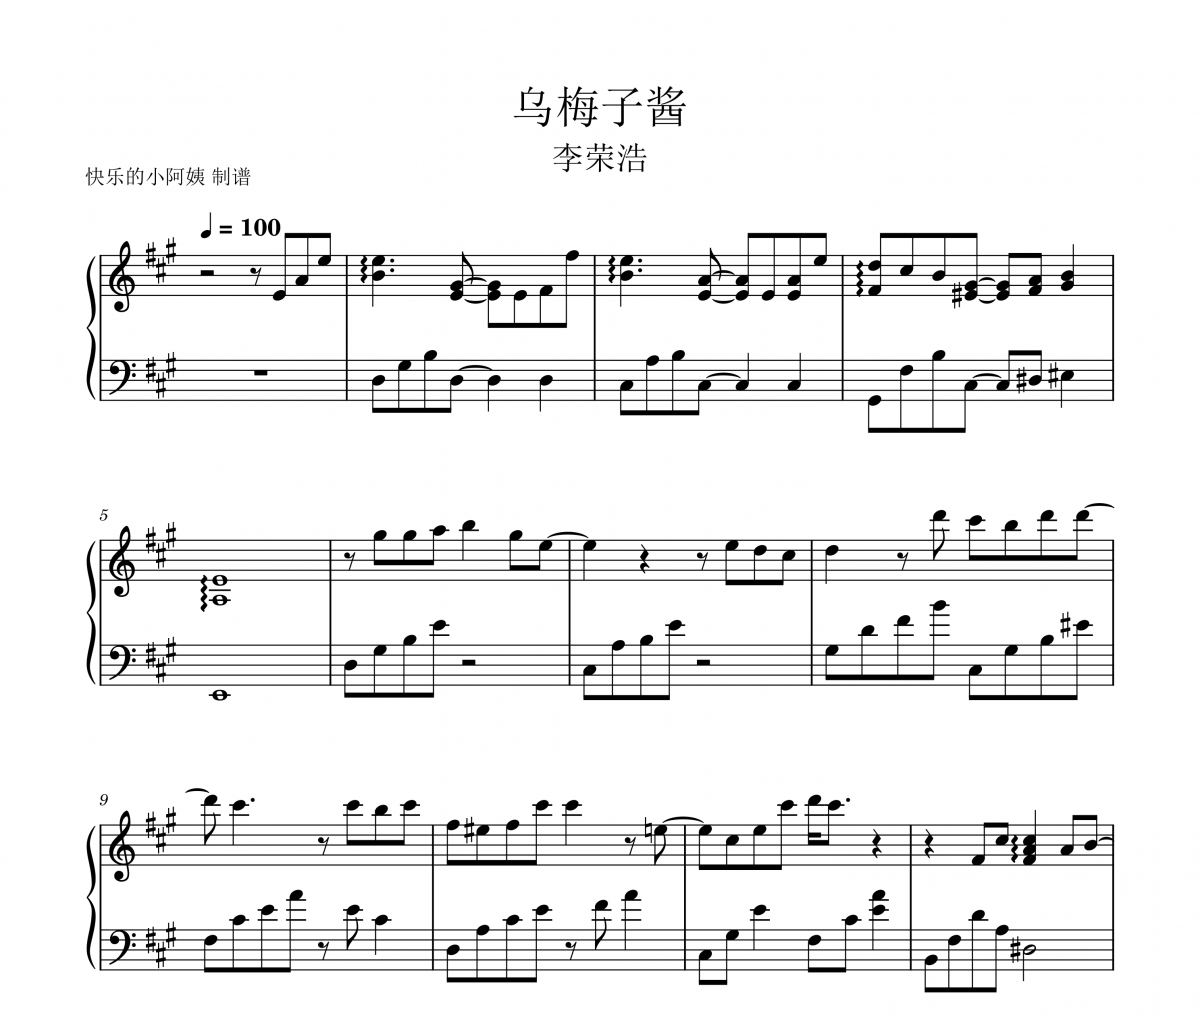 乌梅子酱-完整版钢琴谱 李荣浩《乌梅子酱》五线谱|钢琴谱